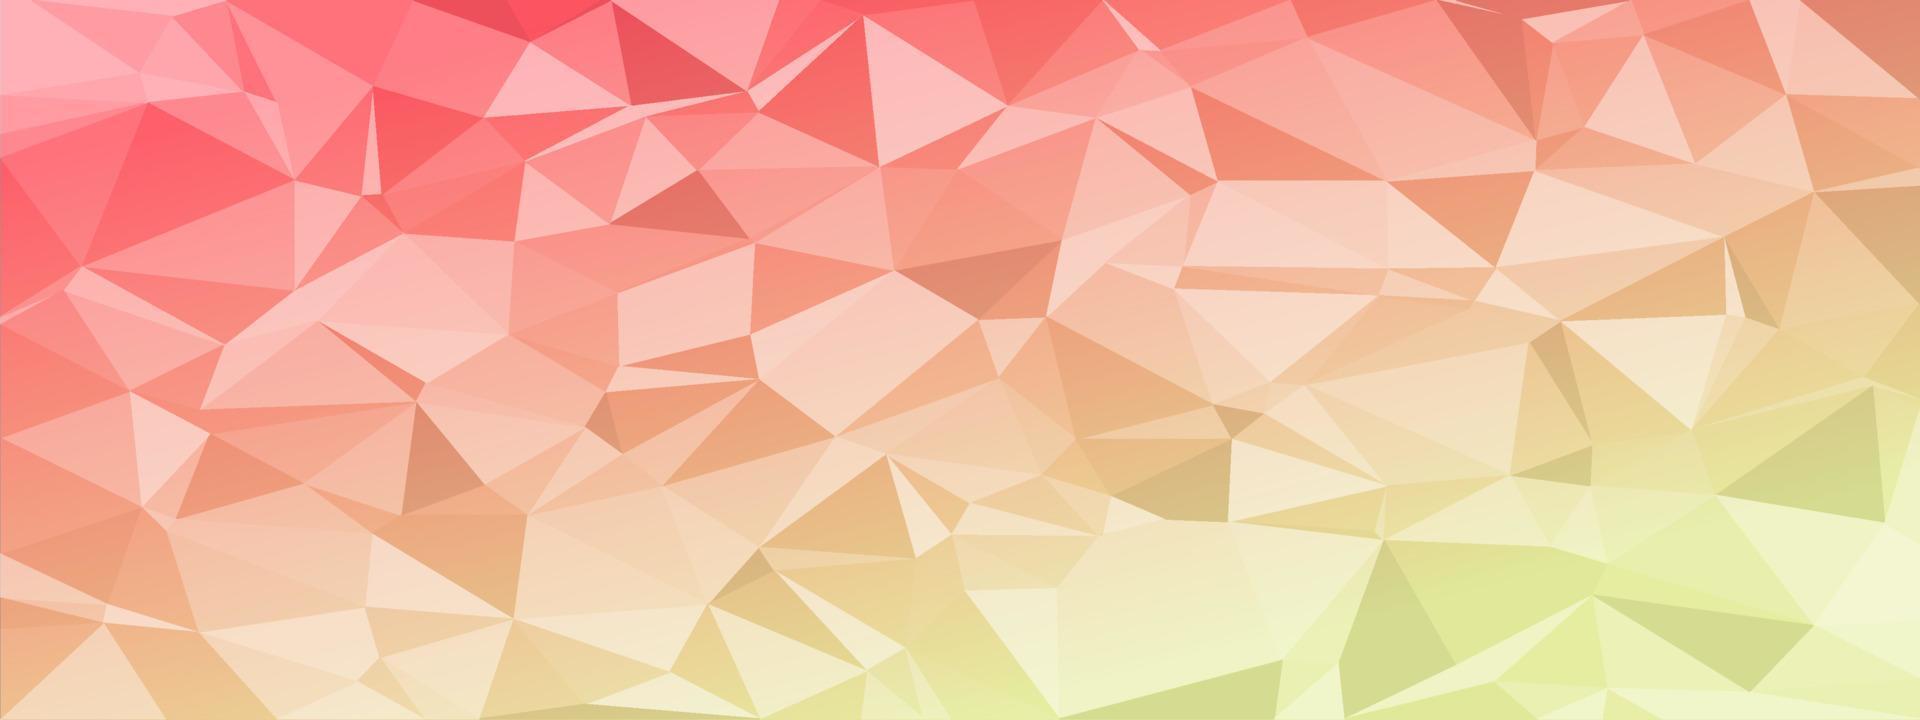 Low-Poly-abstrakter moderner Hintergrund. helle Farben chaotische Dreiecke variabler Größe und Rotation. minimalistisches Layout für die Website-Broschüre der Visitenkarten-Landingpage-Tapete. trendiger Vektor eps10